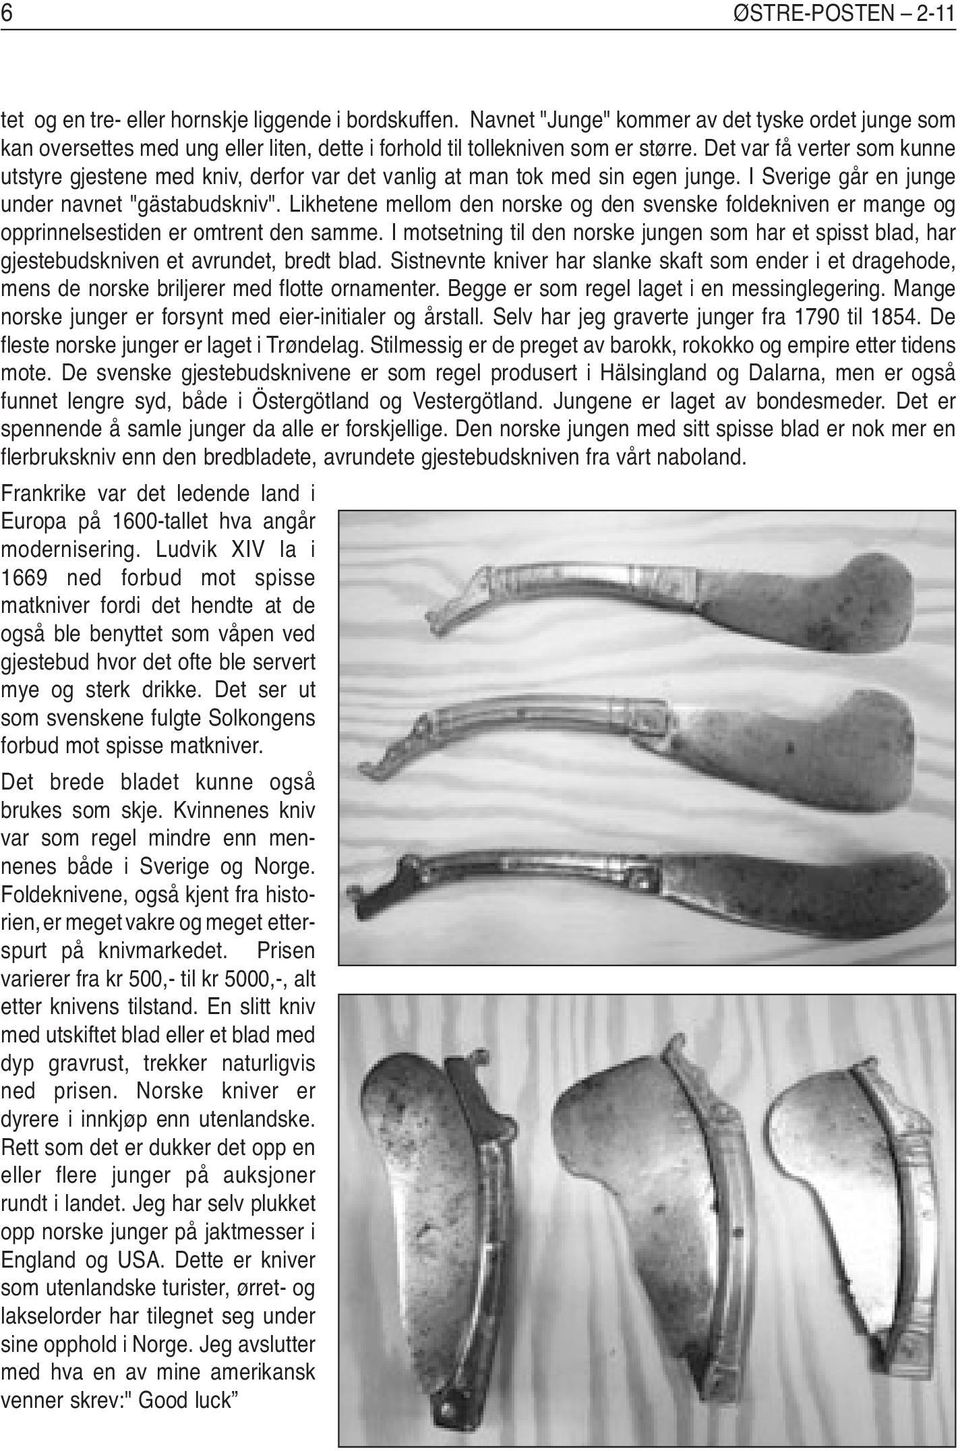 Det var få verter som kunne utstyre gjestene med kniv, derfor var det vanlig at man tok med sin egen junge. I Sverige går en junge under navnet "gästabudskniv".